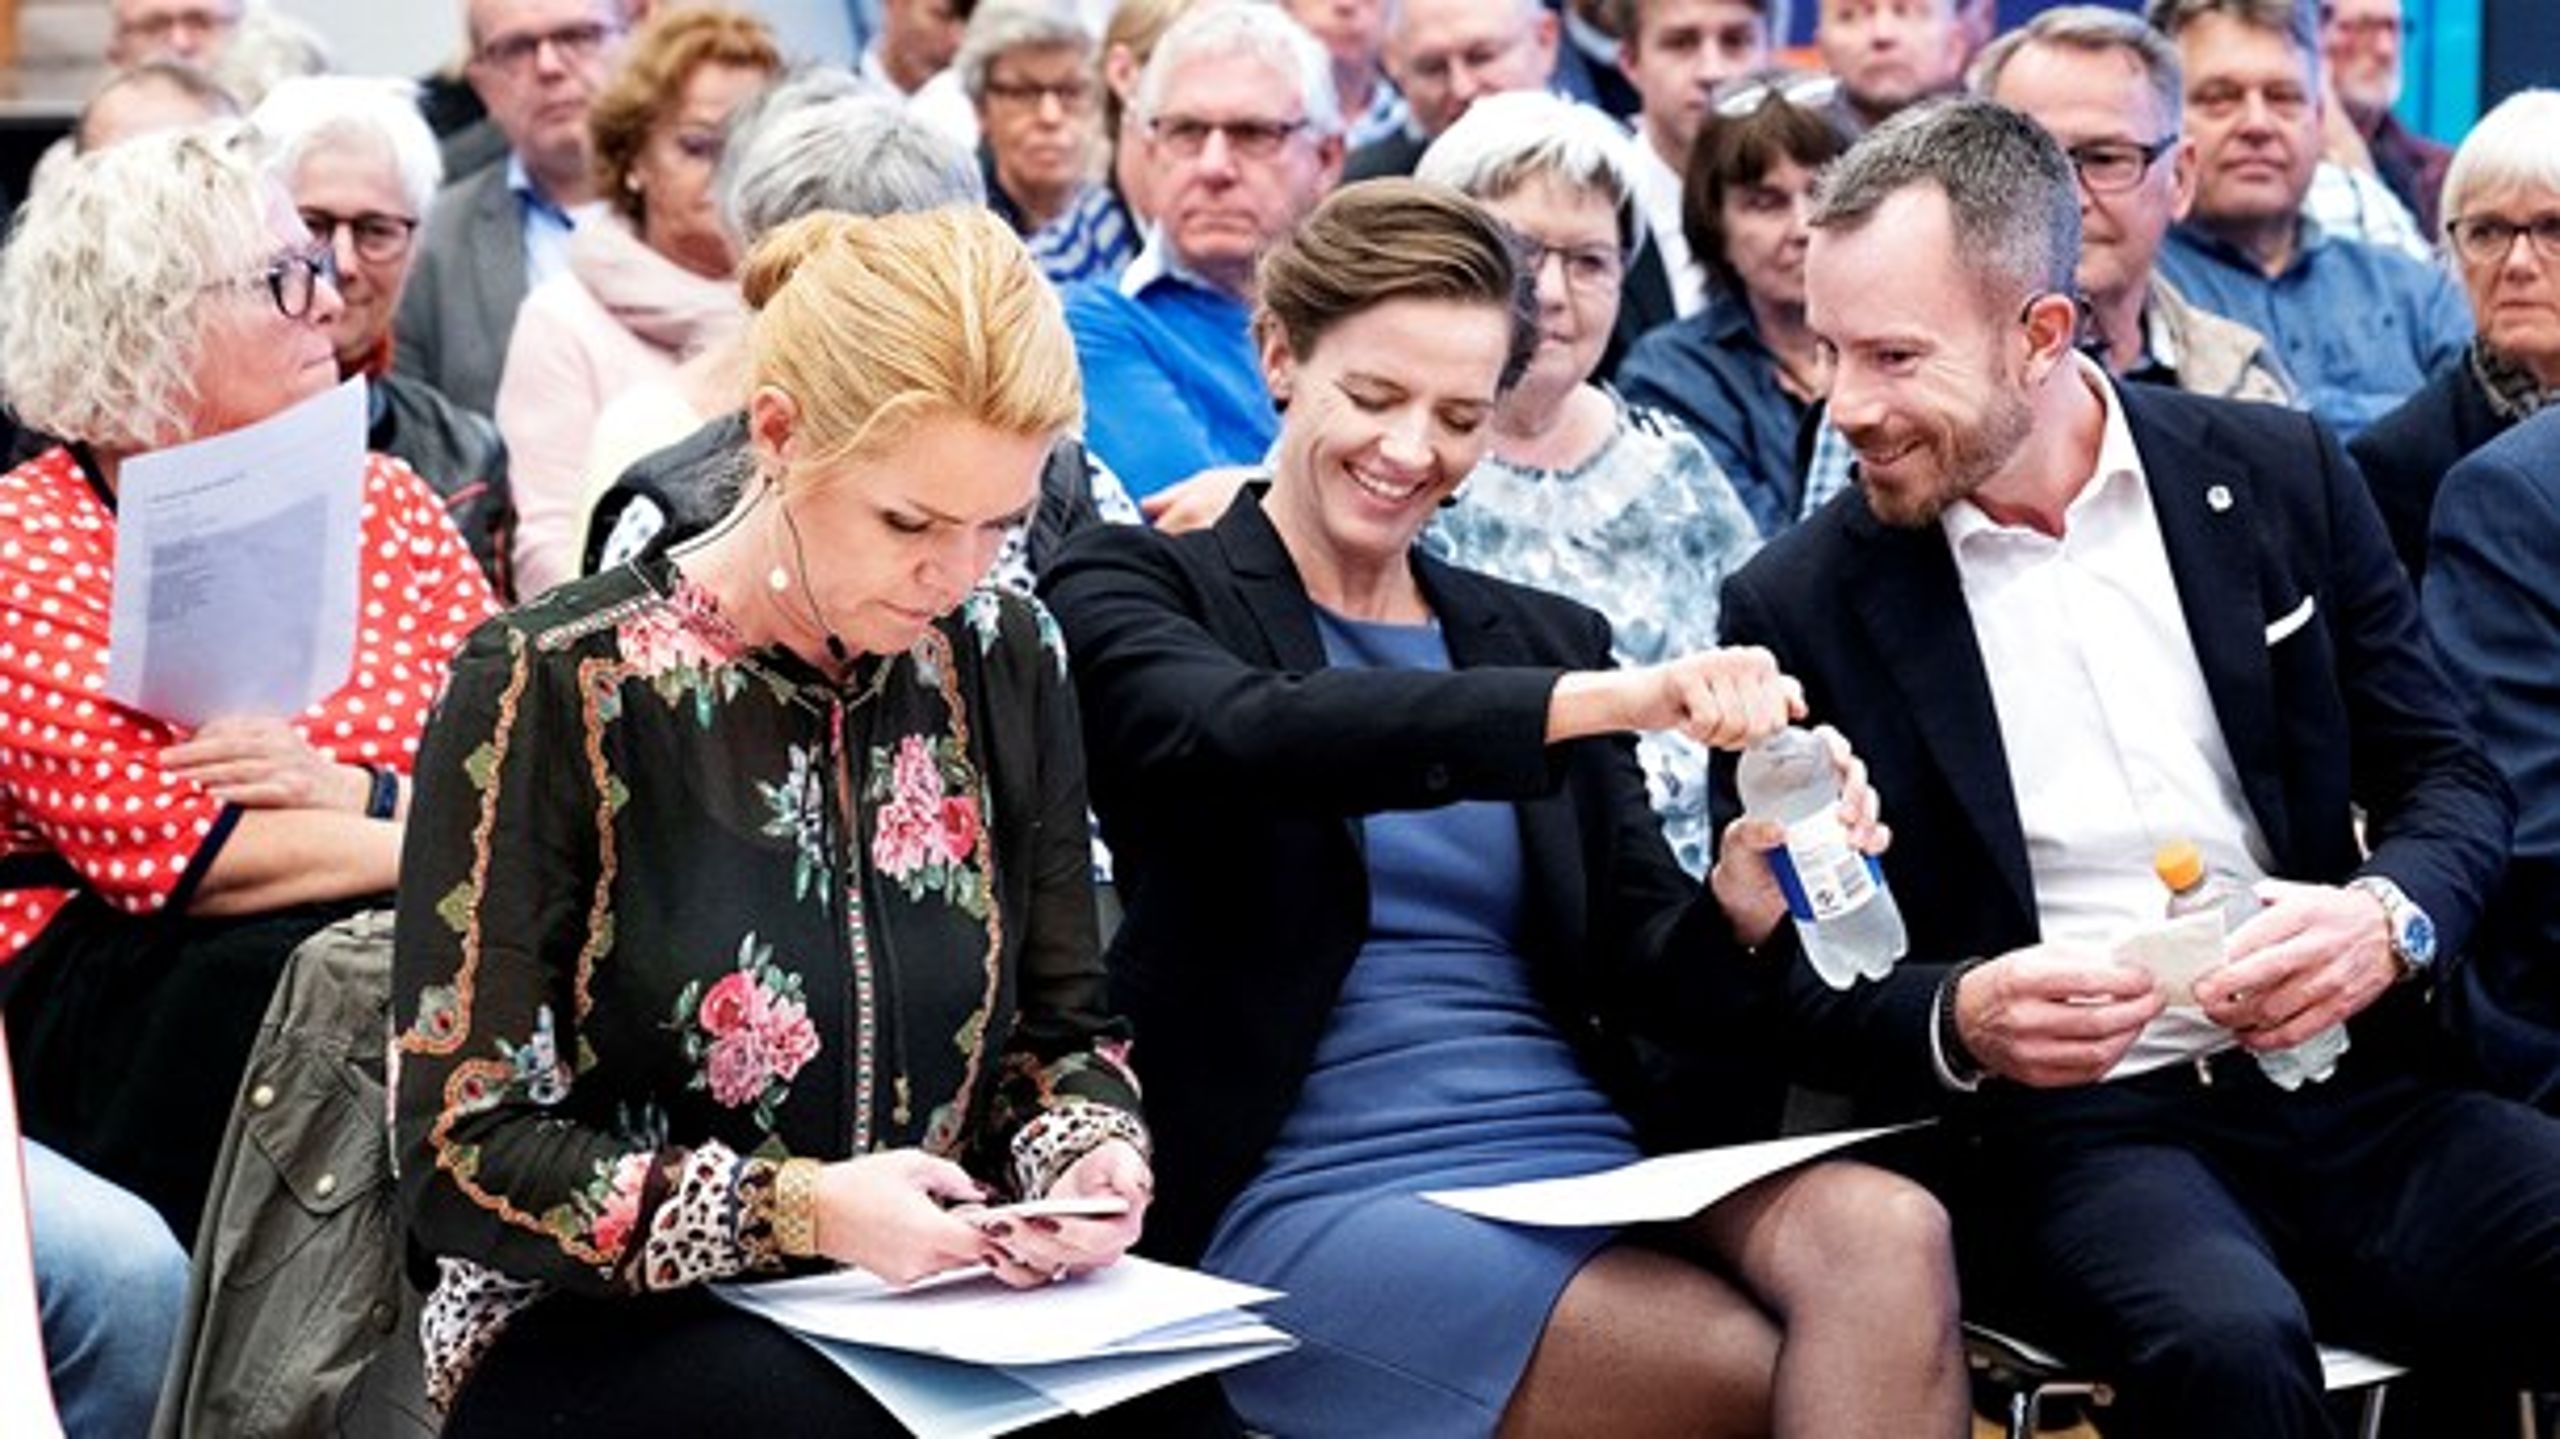 Kandidaterne til næstformandsposten i Venstre&nbsp;Inger Støjberg og Ellen Trane Nørby samt formandskandidat Jakob Ellemann-Jensen er på turné for at møde medlemmerne før valget lørdag 21. september. Her er de i Region Sjælland.